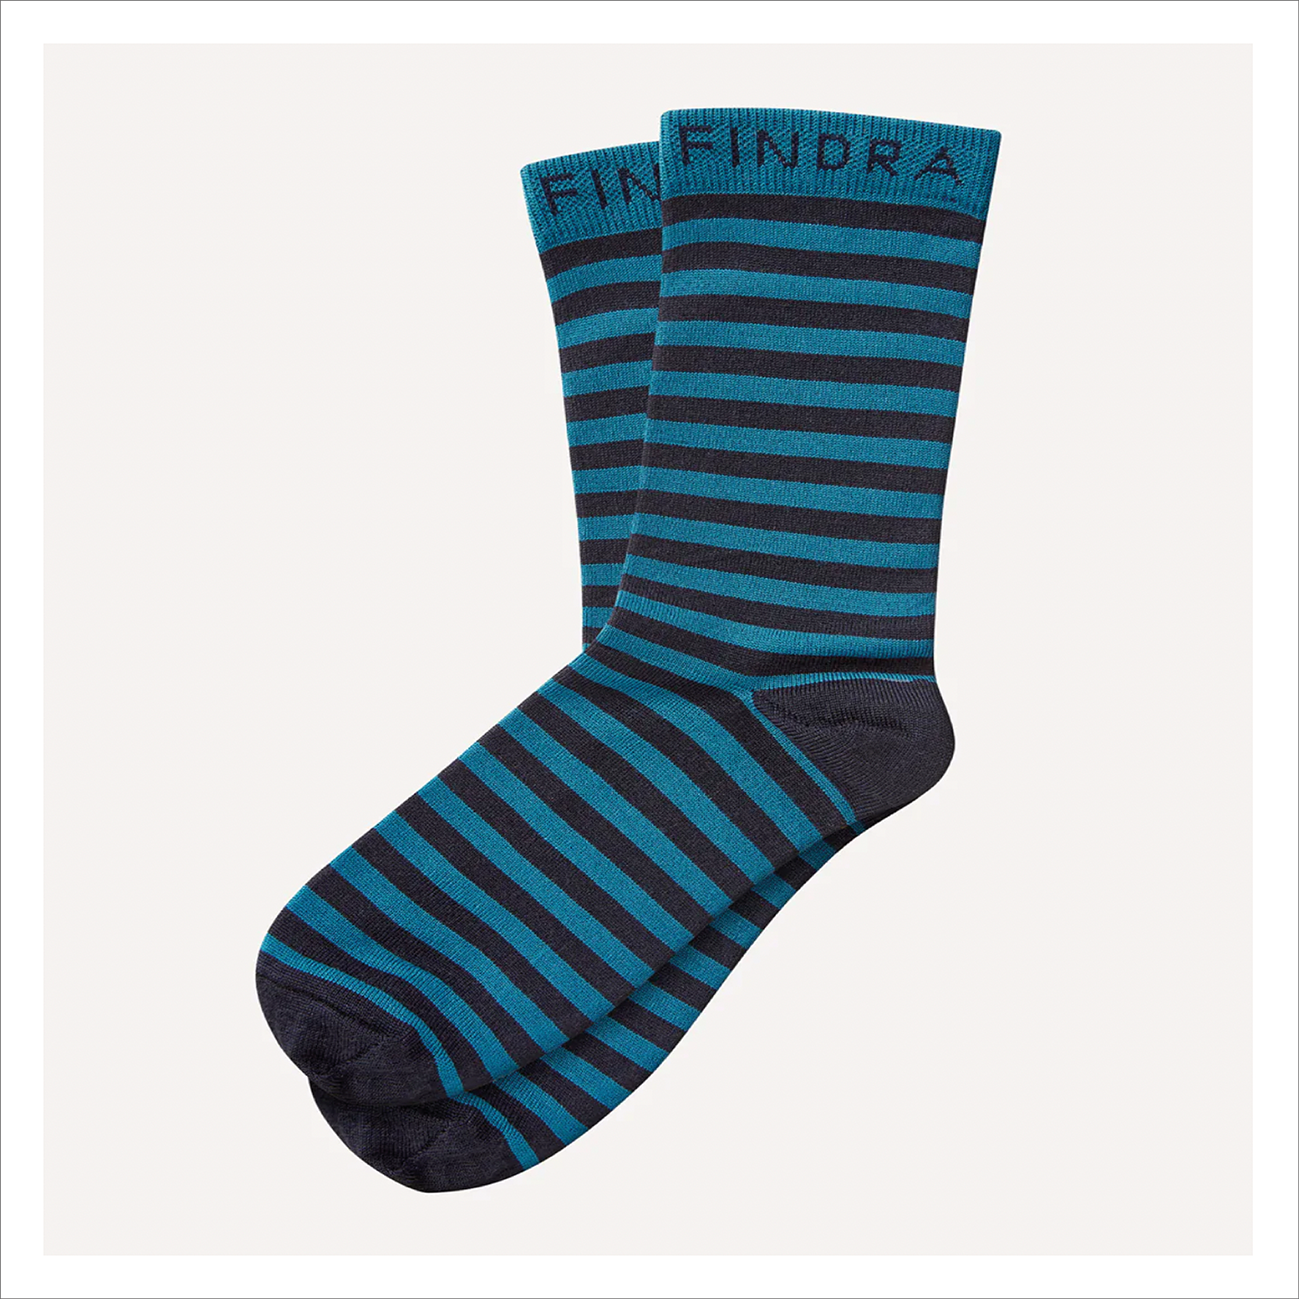 Findra - Sky Merino Stripe Socks